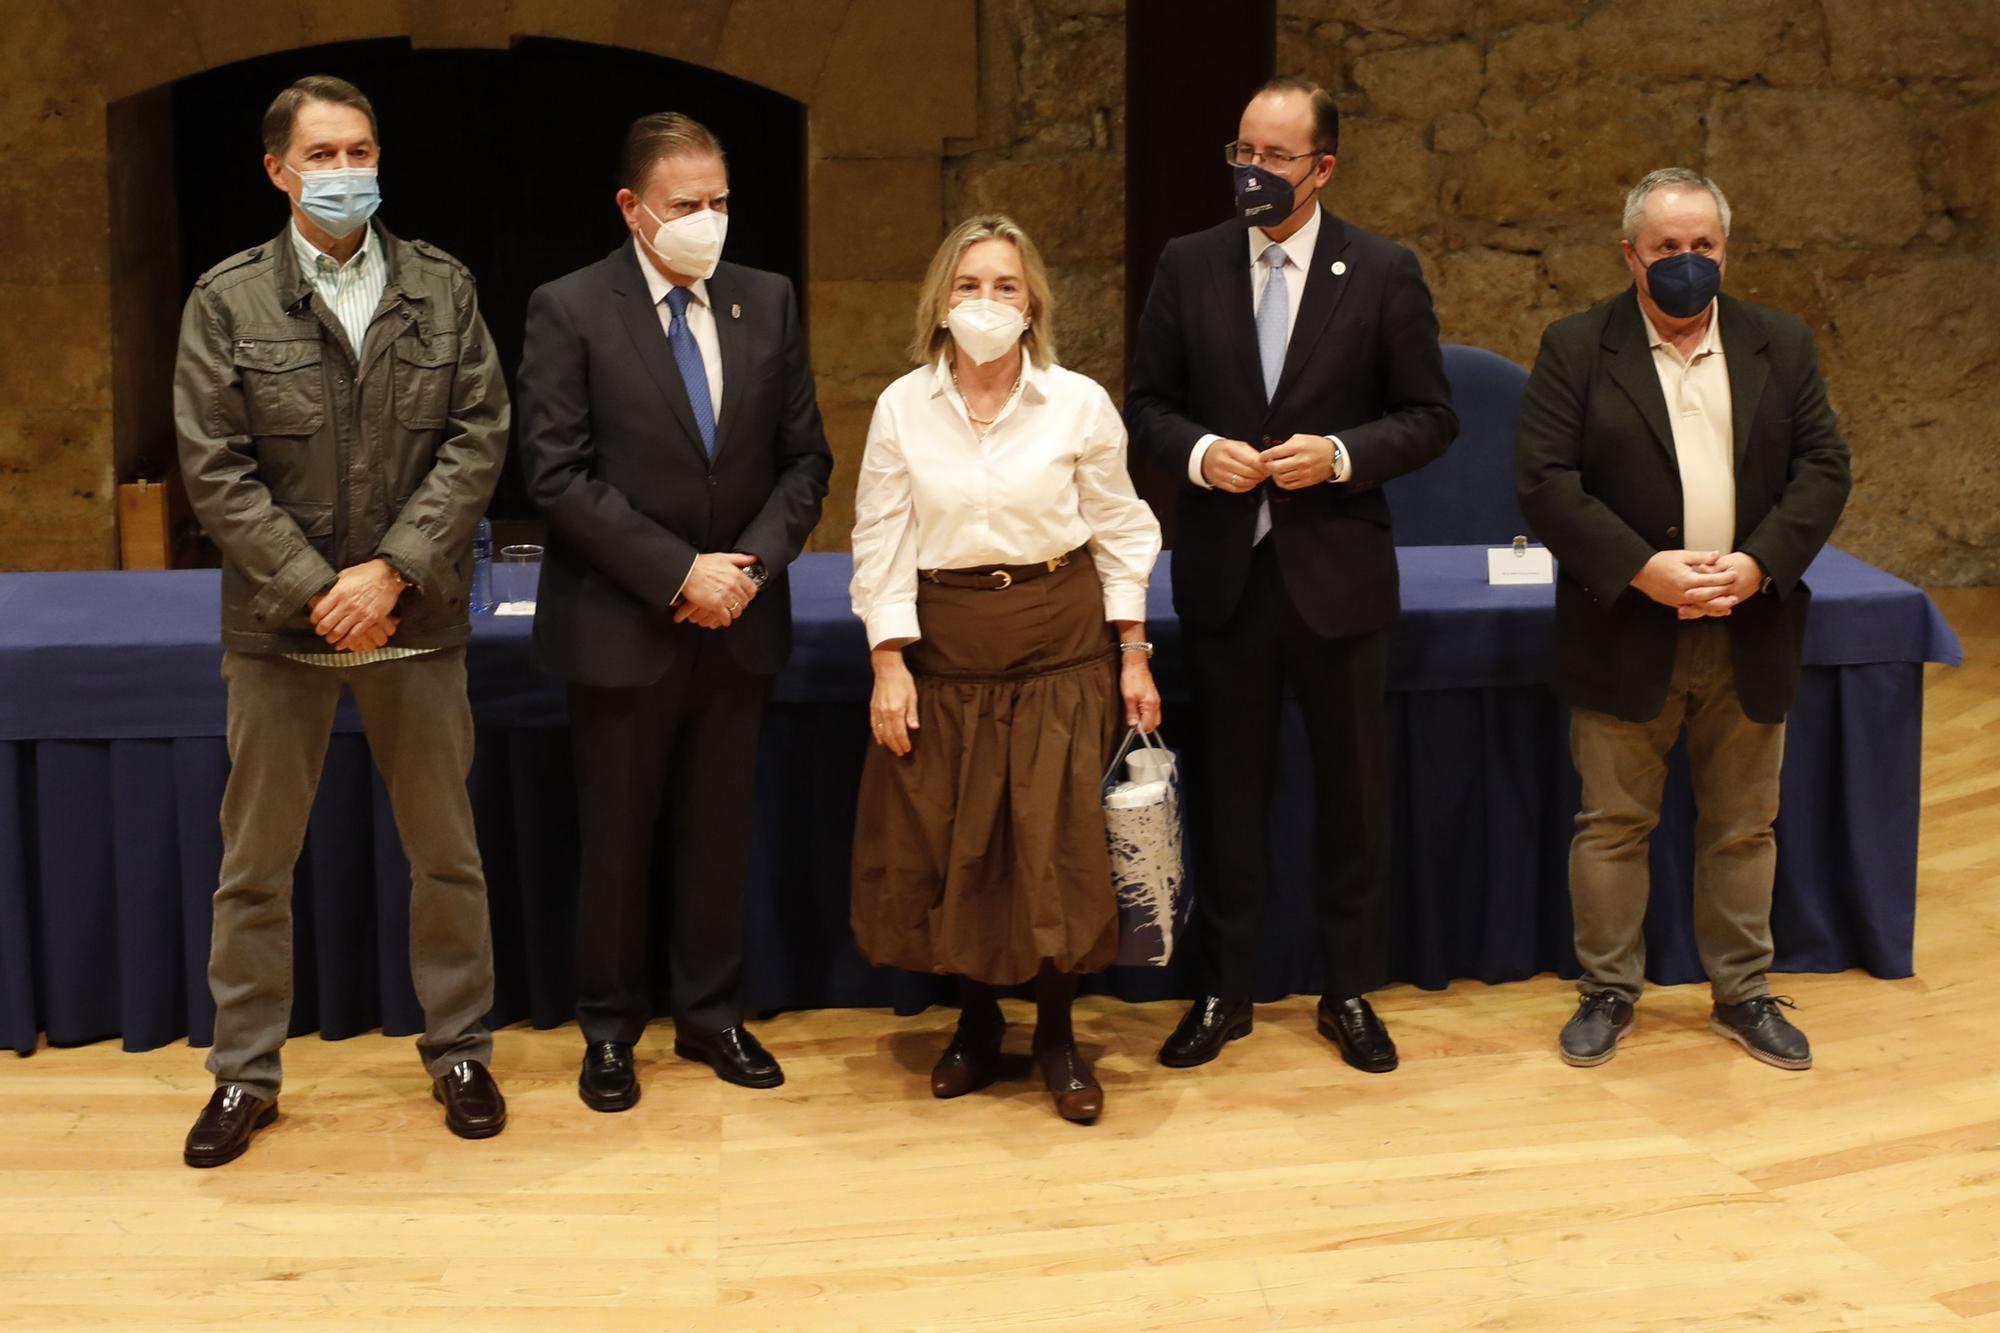 Oviedo homenajea a sus funcionarios por Santa Rita